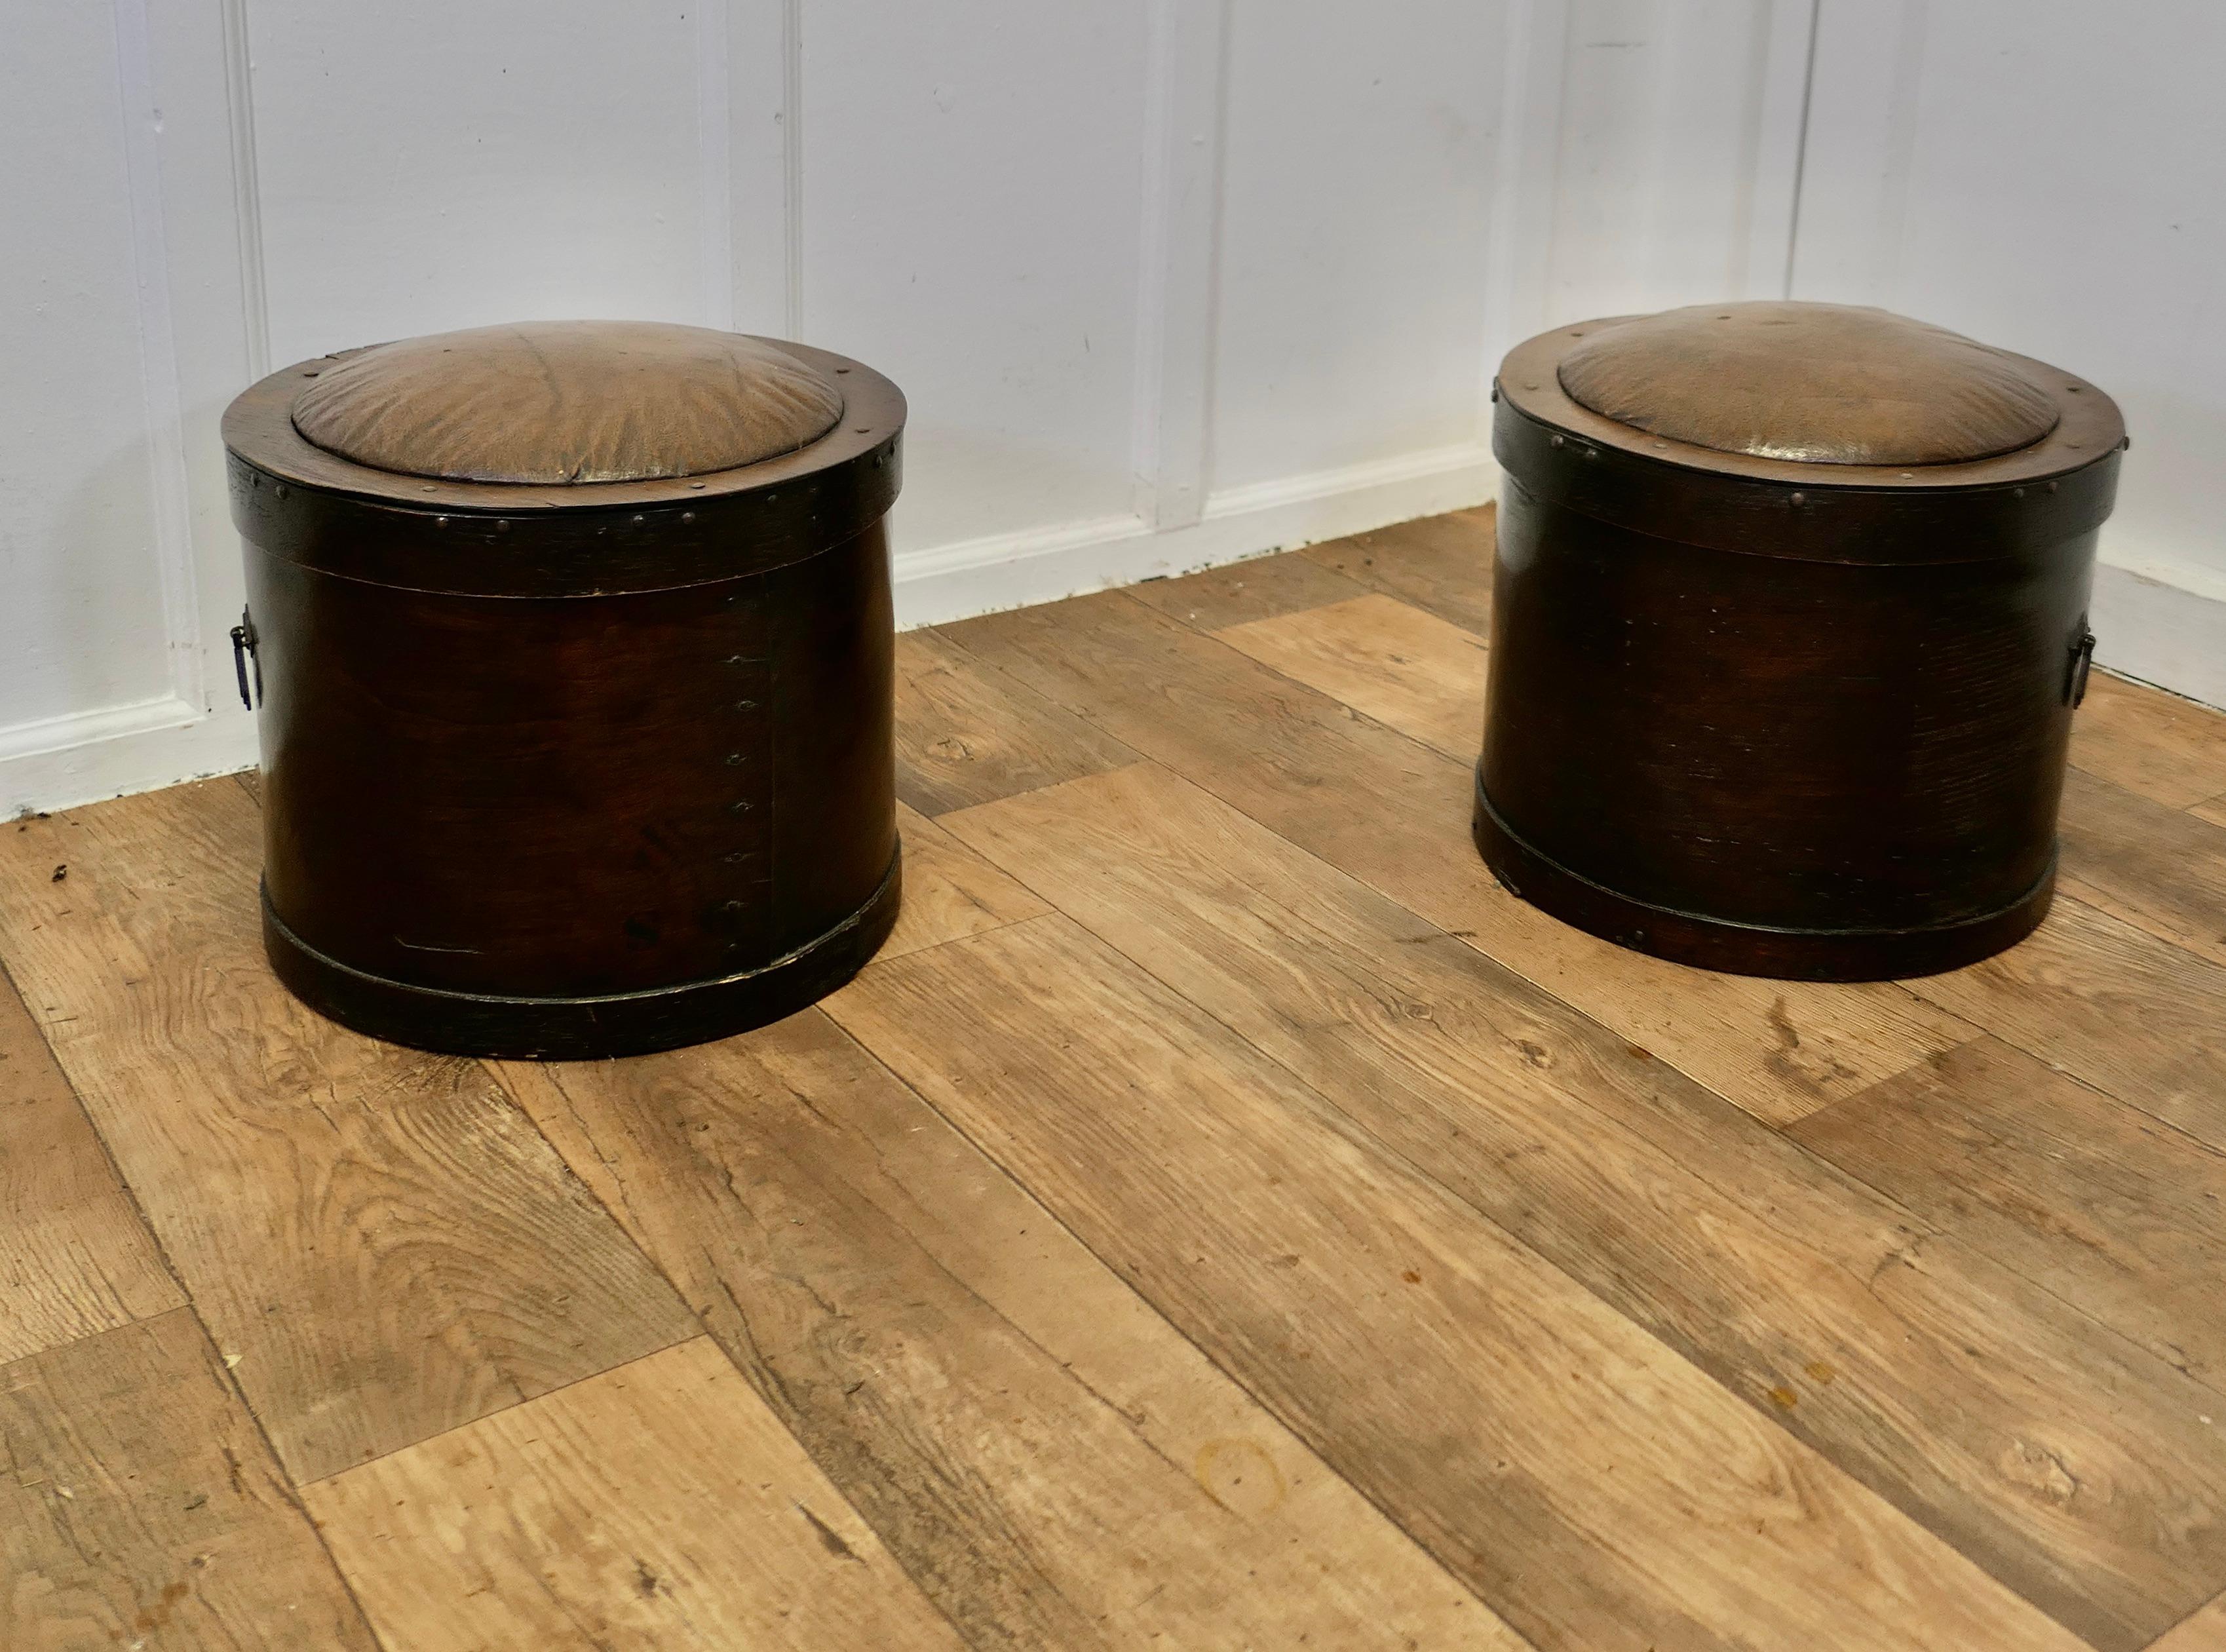 Paire de tabourets de cheminée des années 1920 pour le charbon et les bûches

Une jolie paire de tabourets circulaires en bois courbé, recouverts de Rexine, (un tissu huilé qui ressemble à du cuir).

Les sièges sont dotés de couvercles amovibles